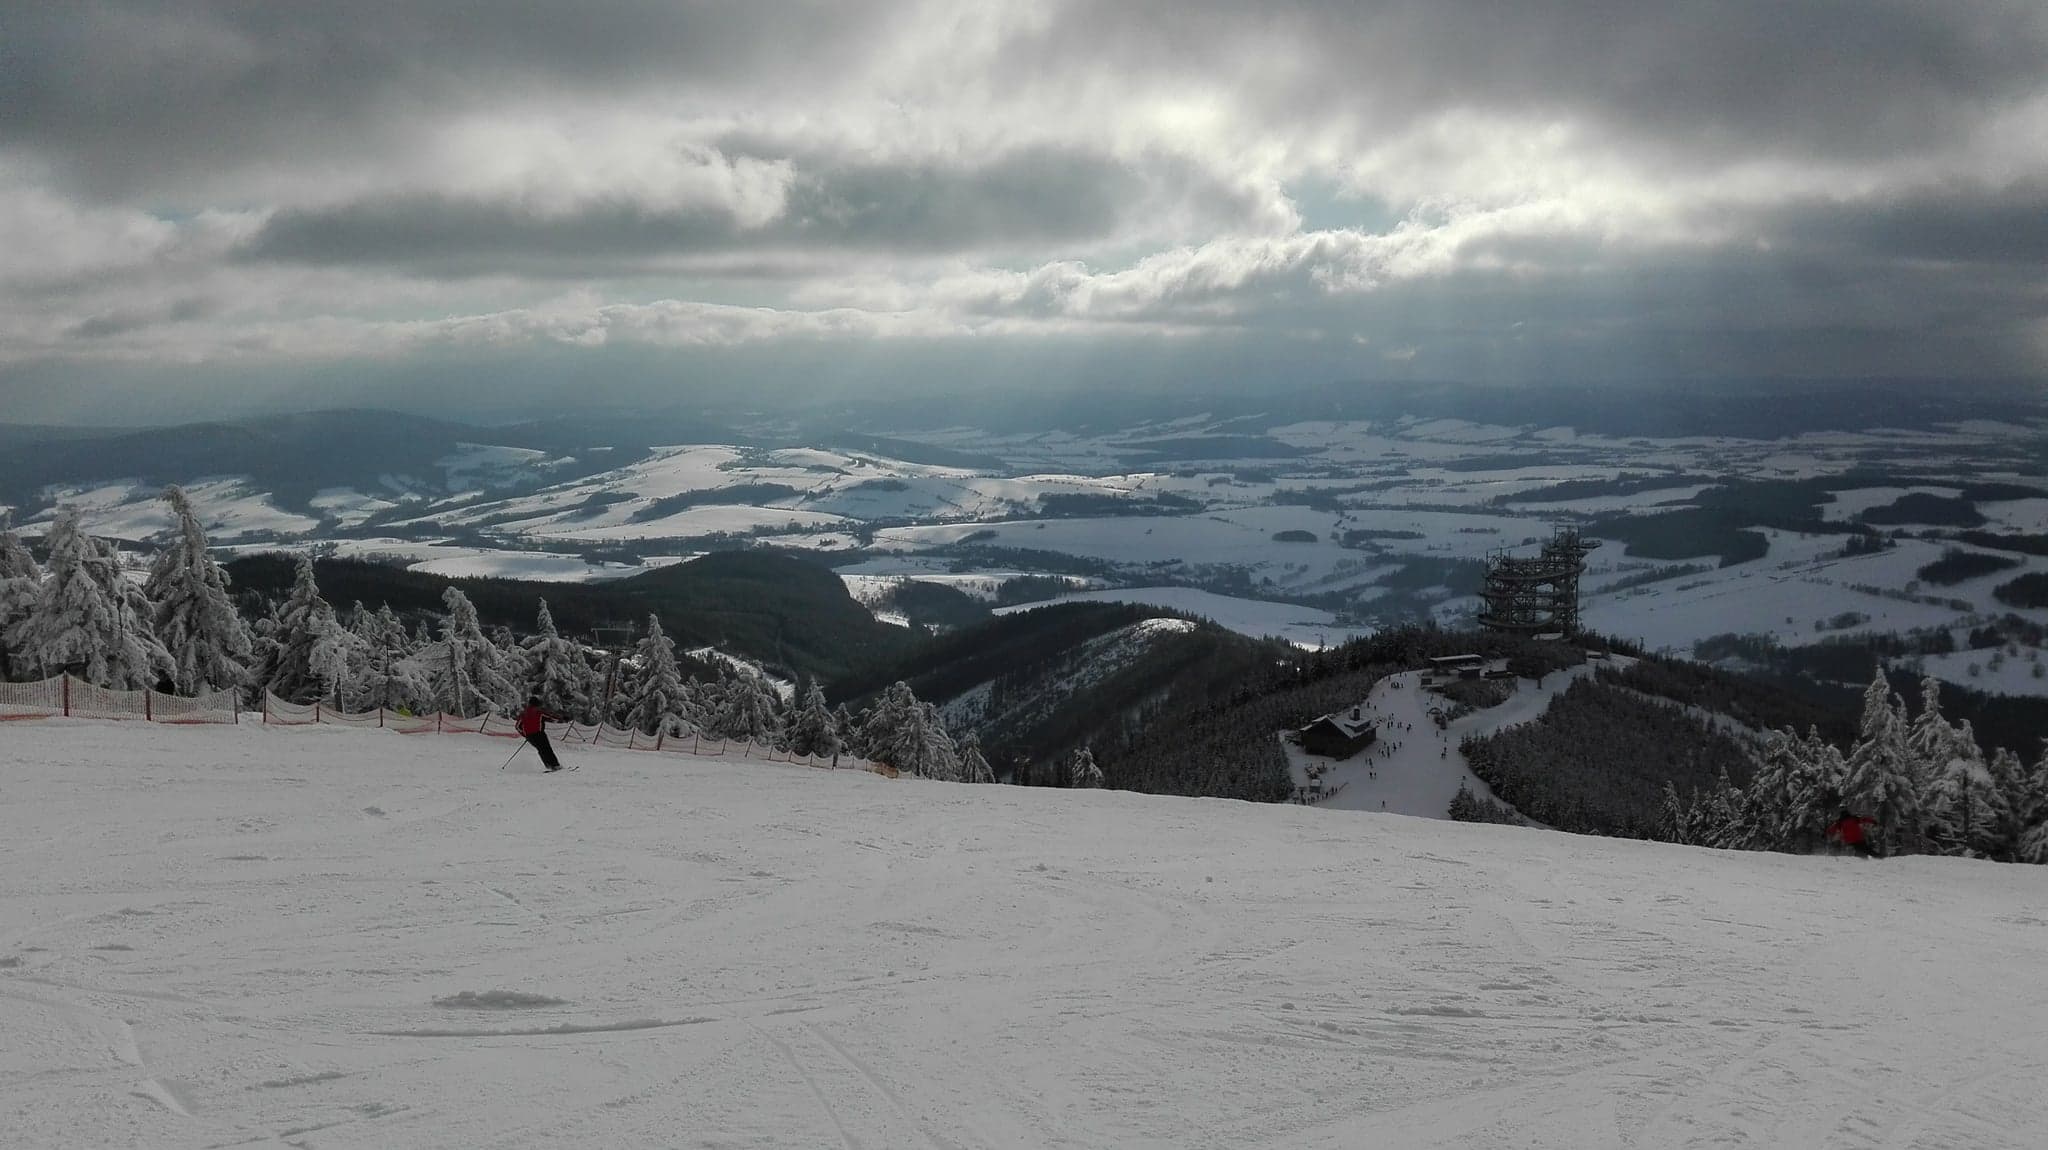 Weekendowy raport narciarski. Gdzie warto rozpocząć sezon? [WARUNKI]